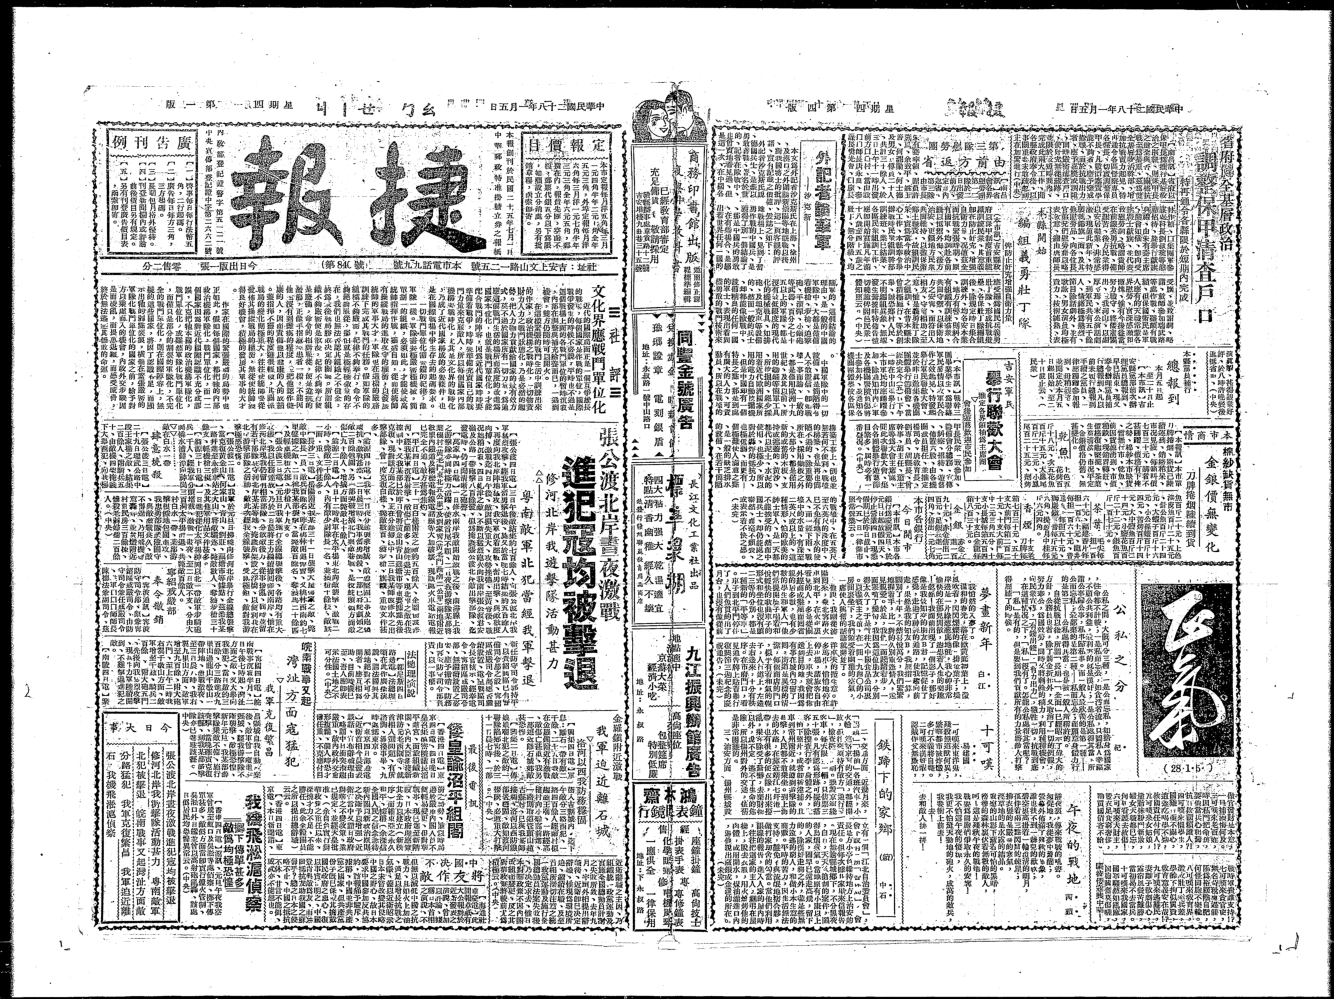 捷报（南昌）(1936.7.1-1949)电子版 捷报社